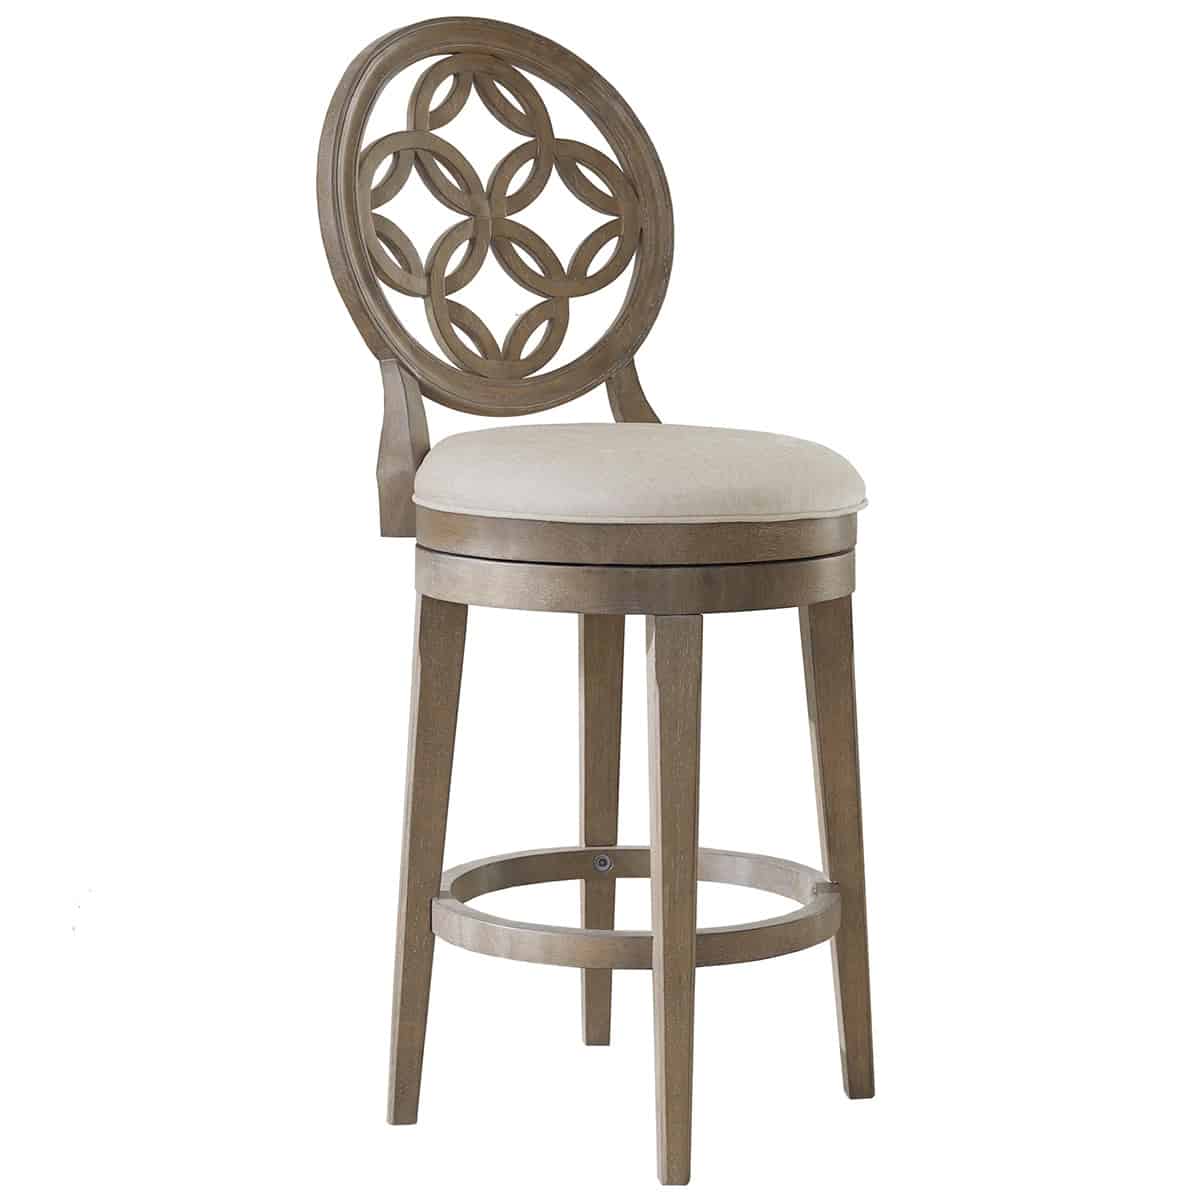 Stylish bar stool with decorative wood back and soft cushion.